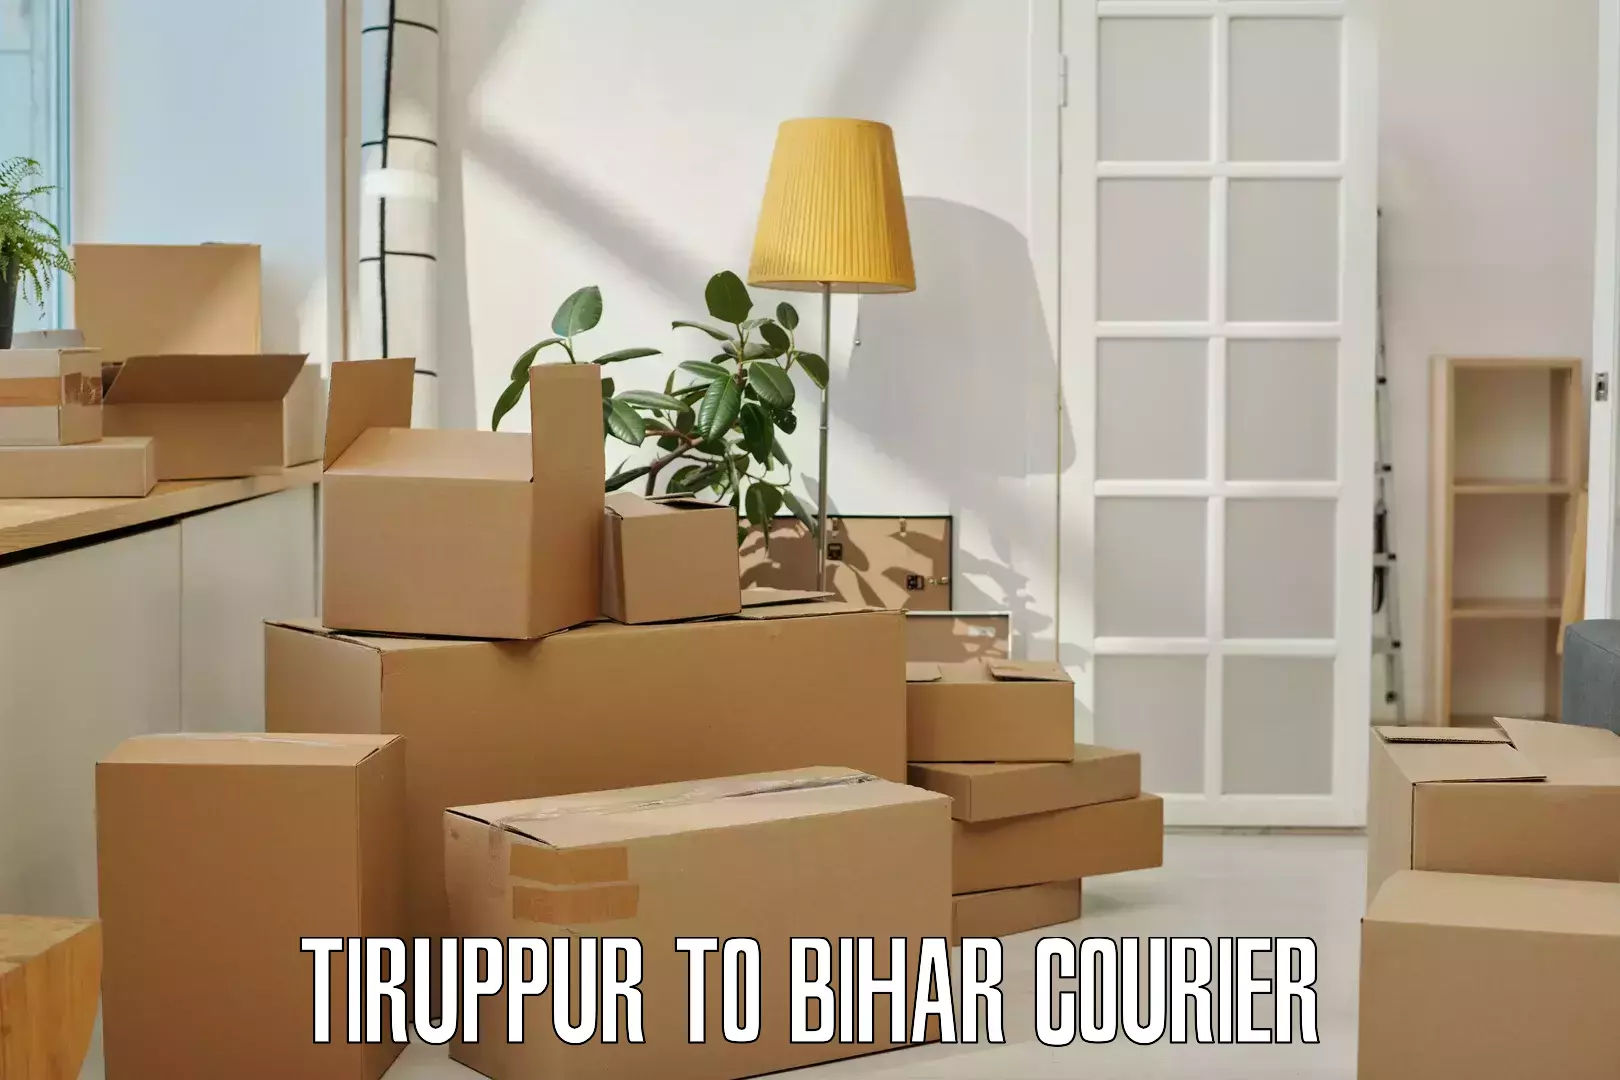 Efficient freight service Tiruppur to Bharwara